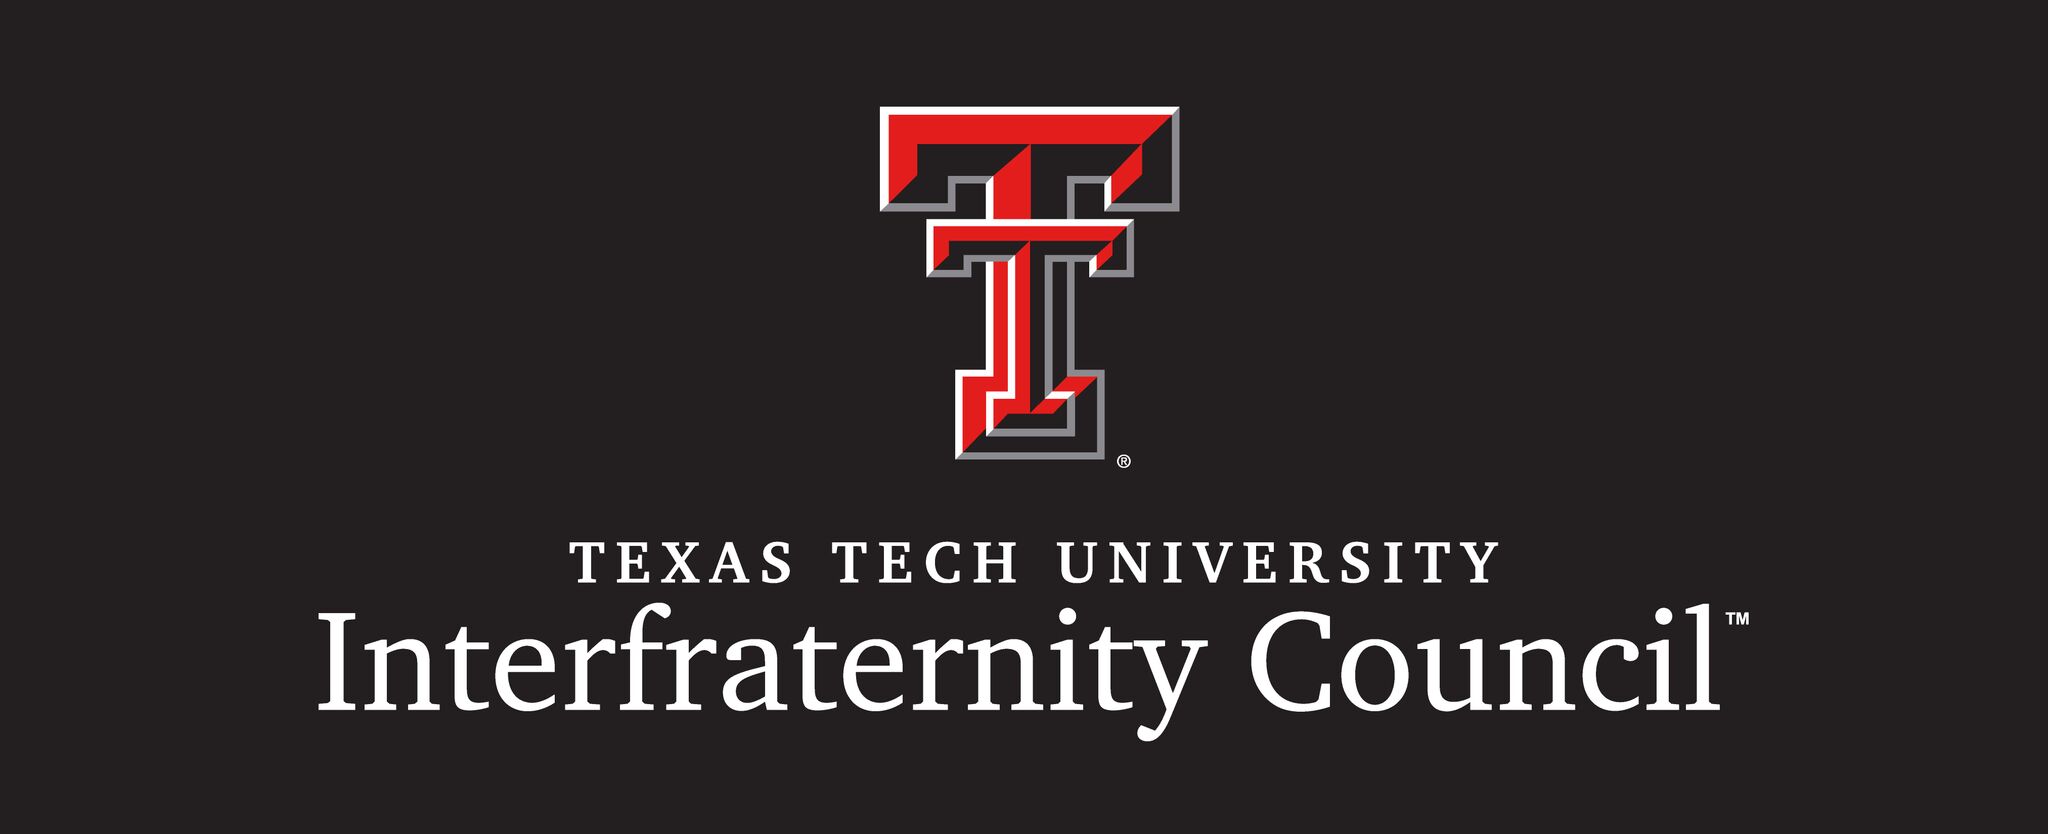 Texas Tech - Texas Tech University